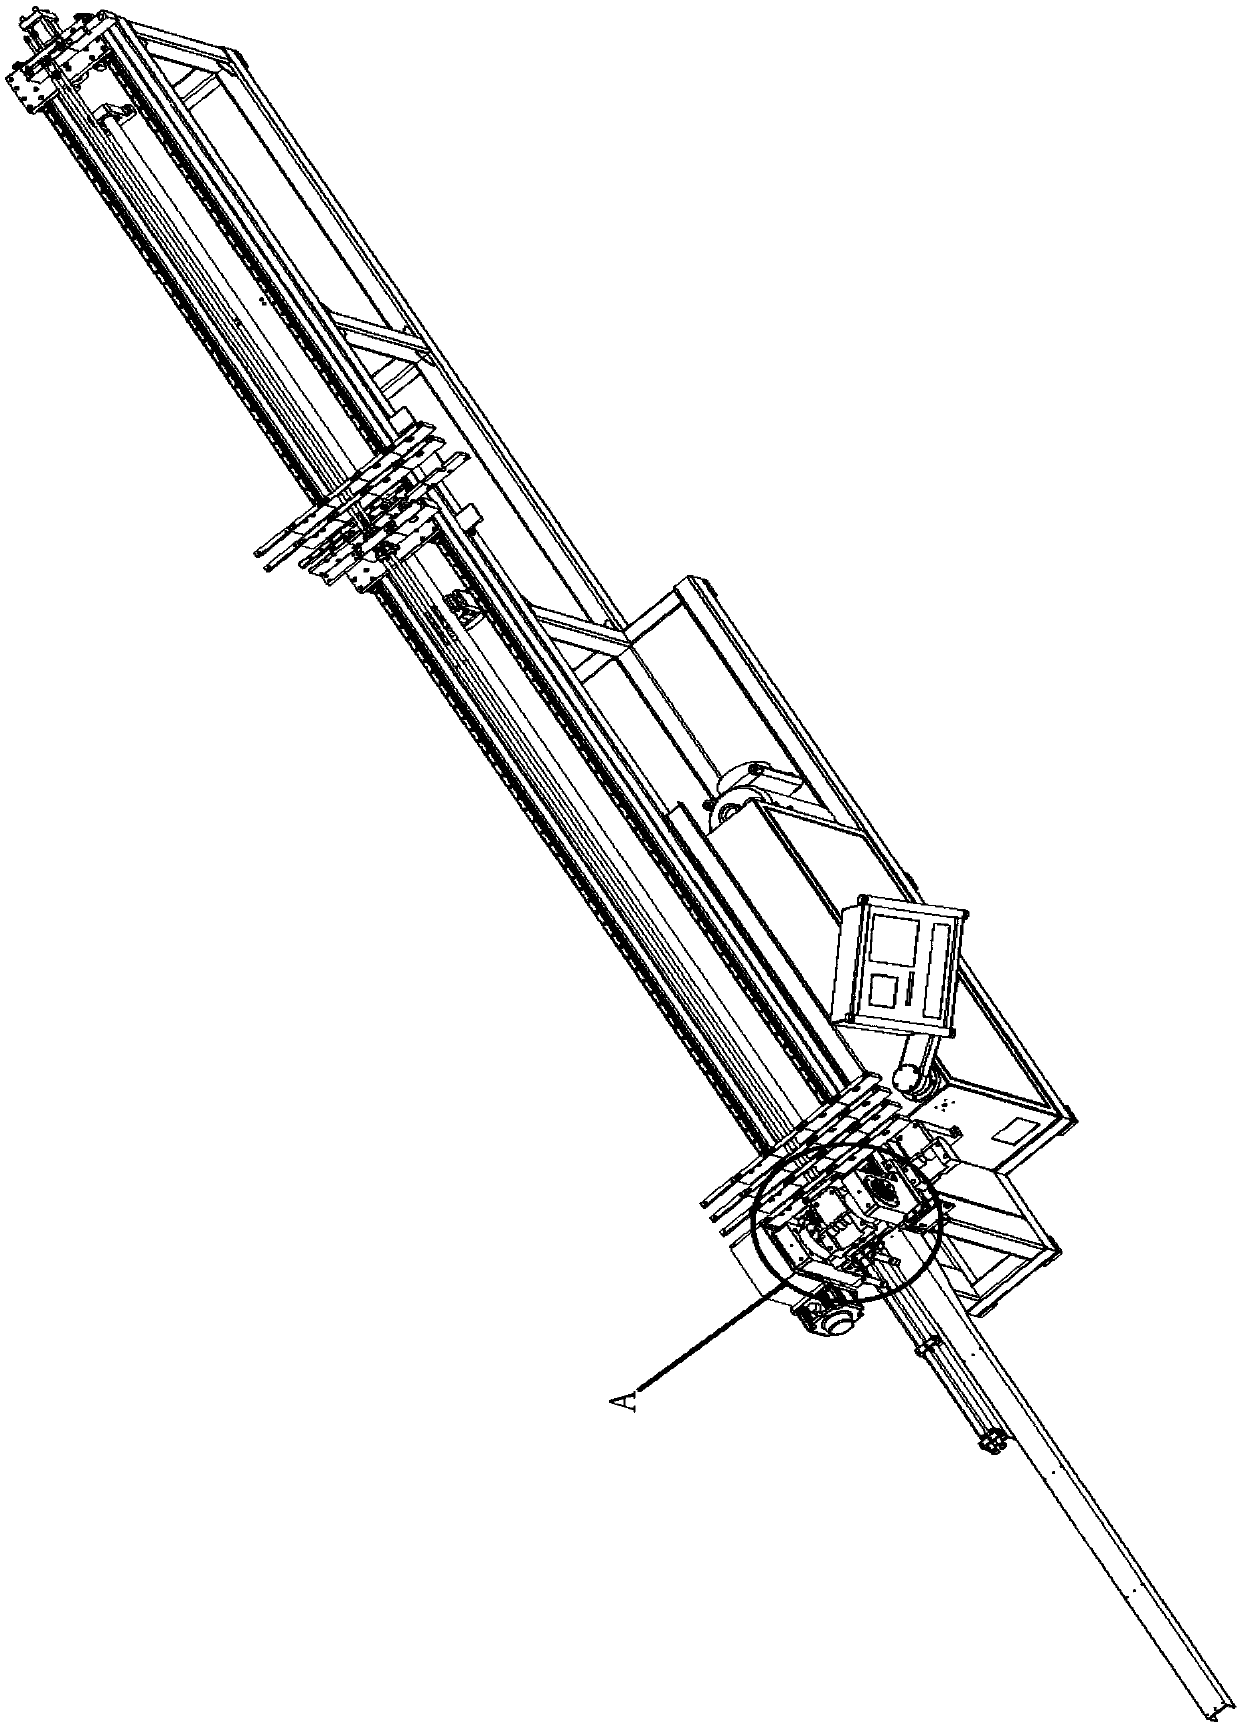 U-shaped pipe bending mechanism